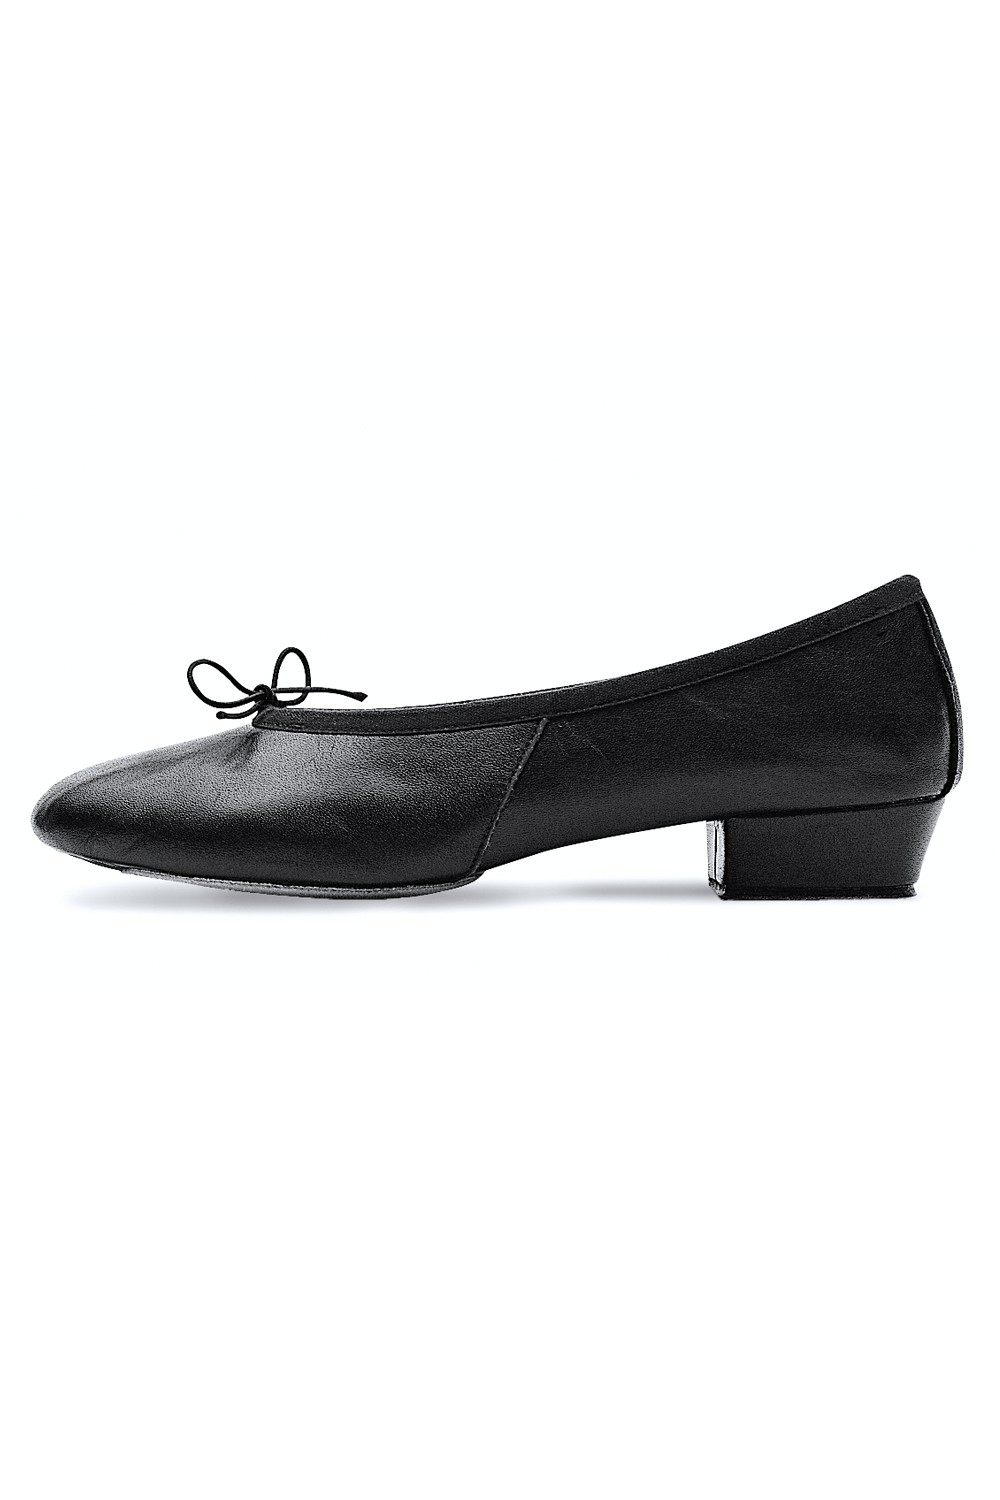 Bloch® Dance Teacher Shoes And Greek Sandals Bloch® Us Store 